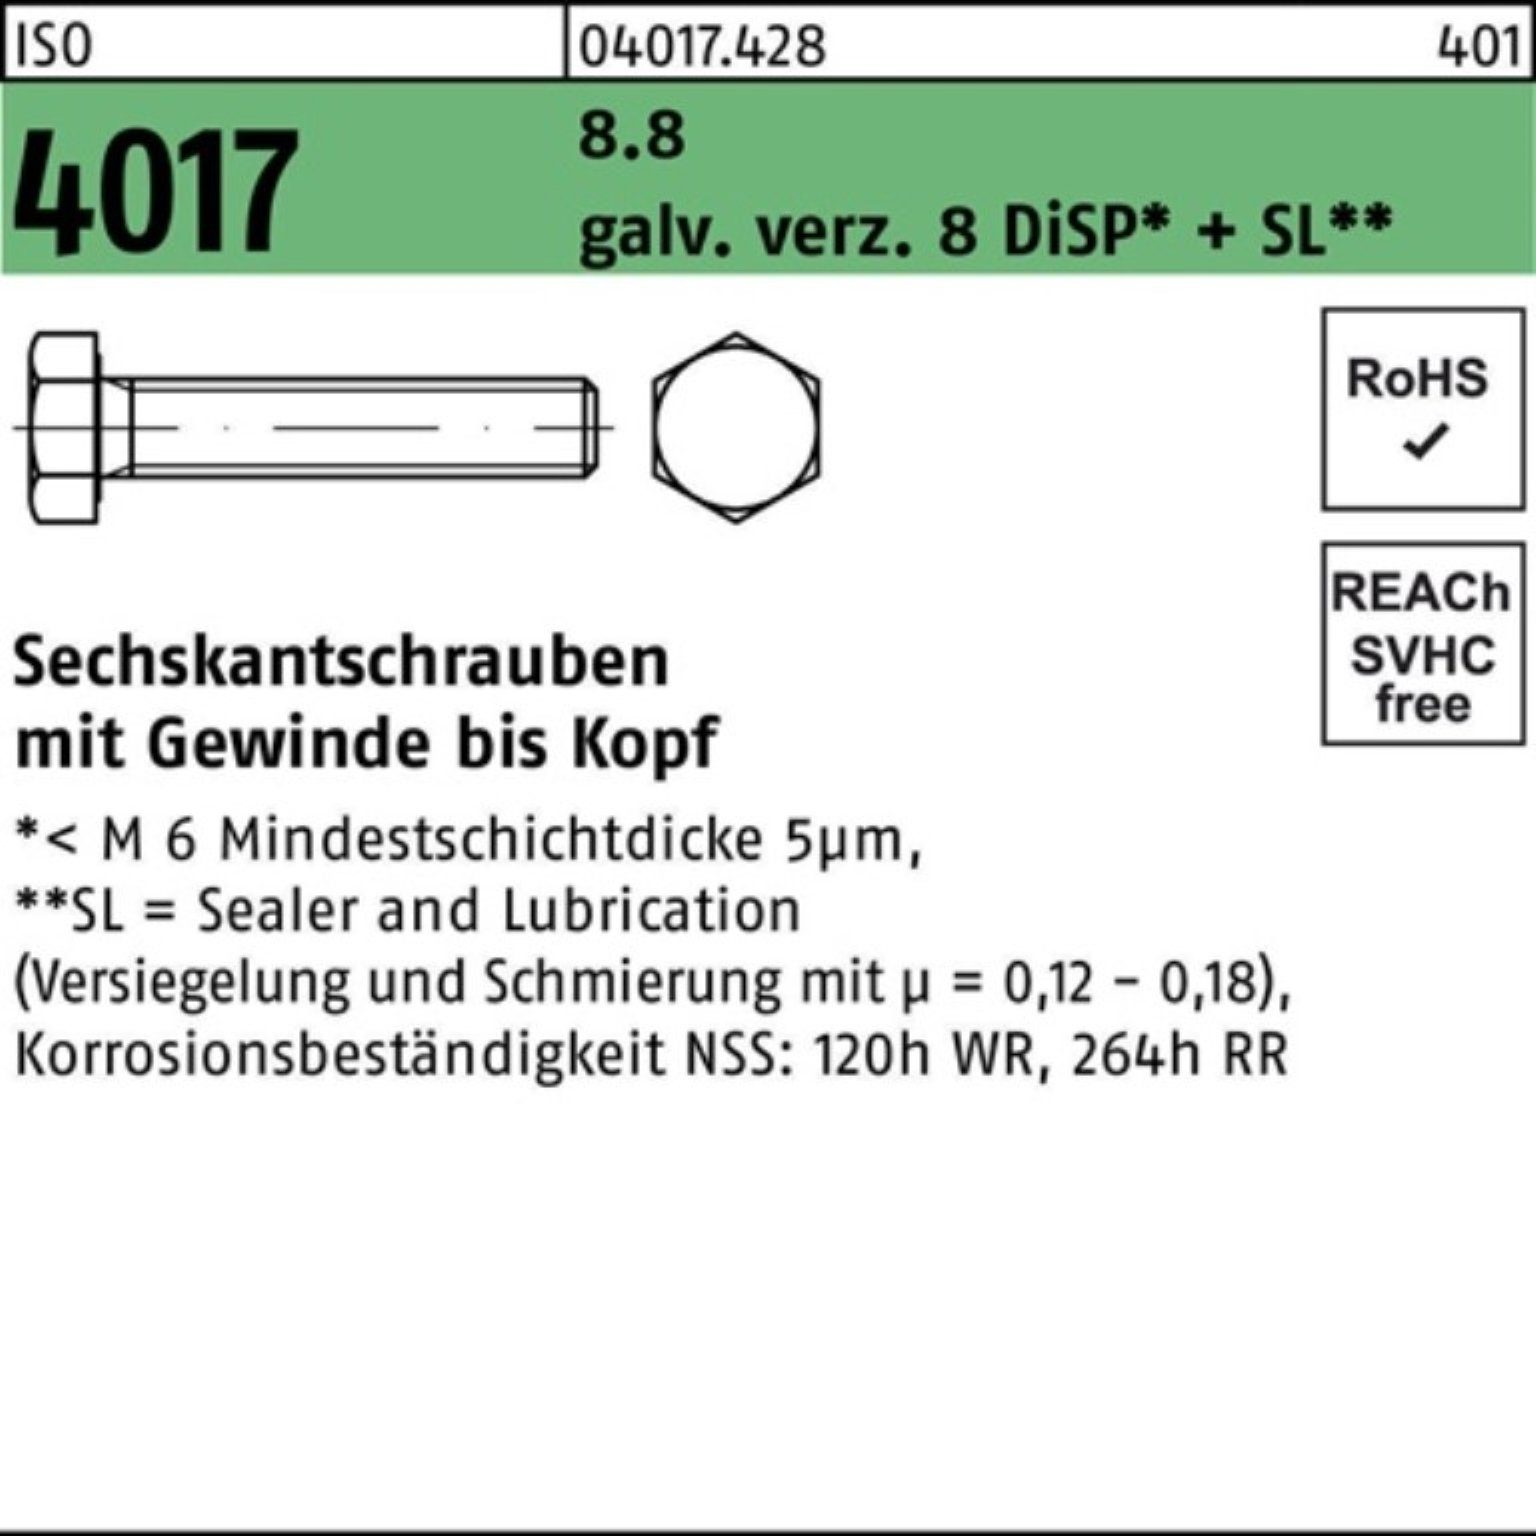 Bufab Sechskantschraube 100er Pack Sechskantschraube DiSP 90 8.8 4017 M20x 8 galv.verz. VG ISO